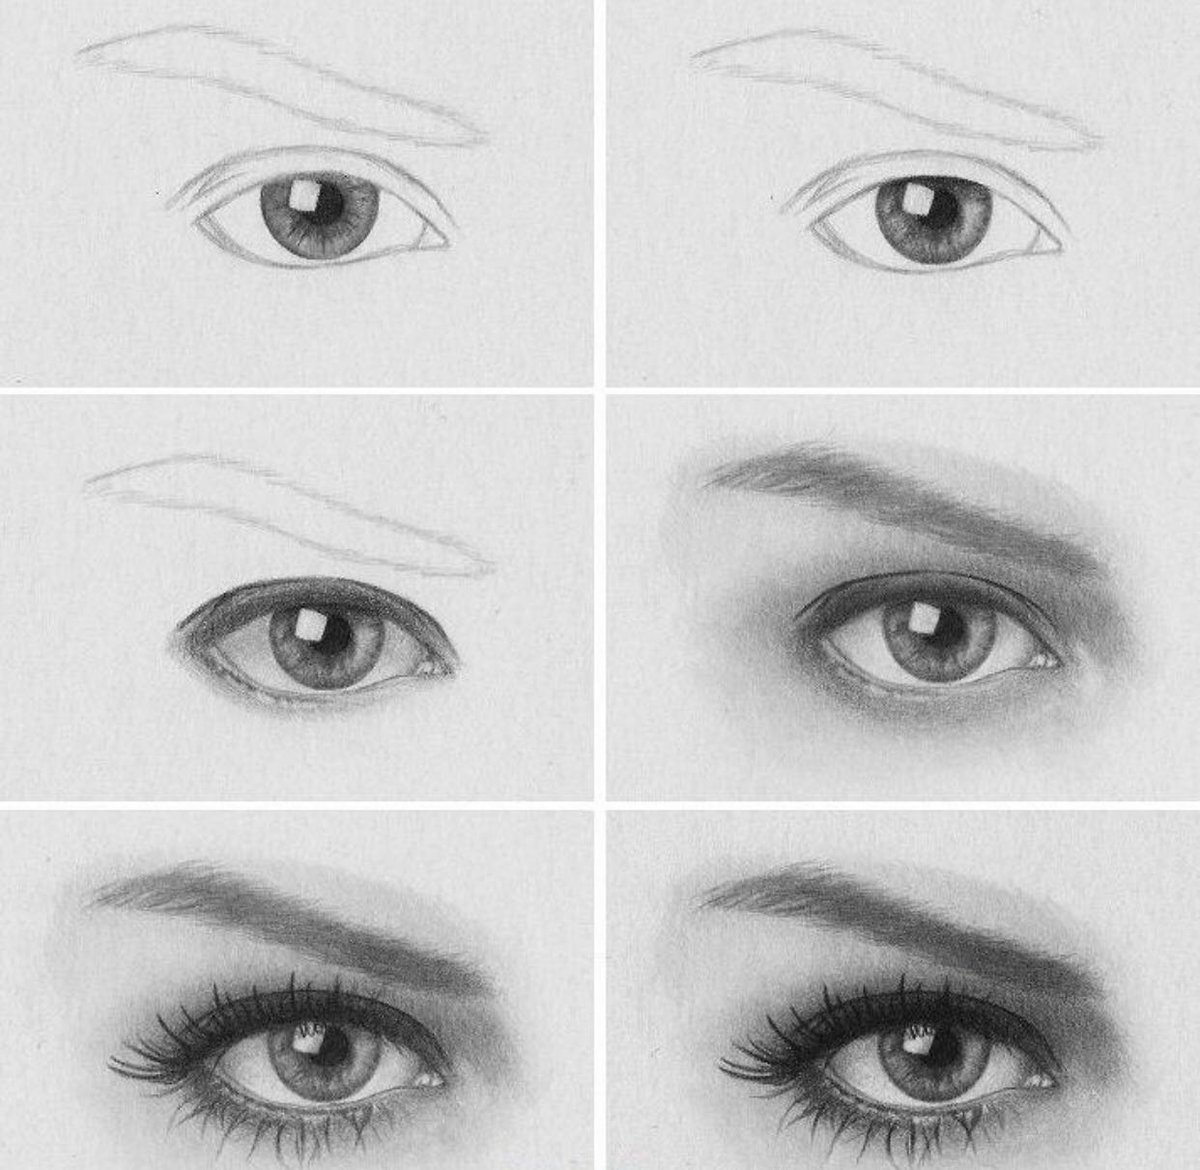 شركة هبة الموهبة Twitterissa طريقة 3 رسم العين مع الحاجب